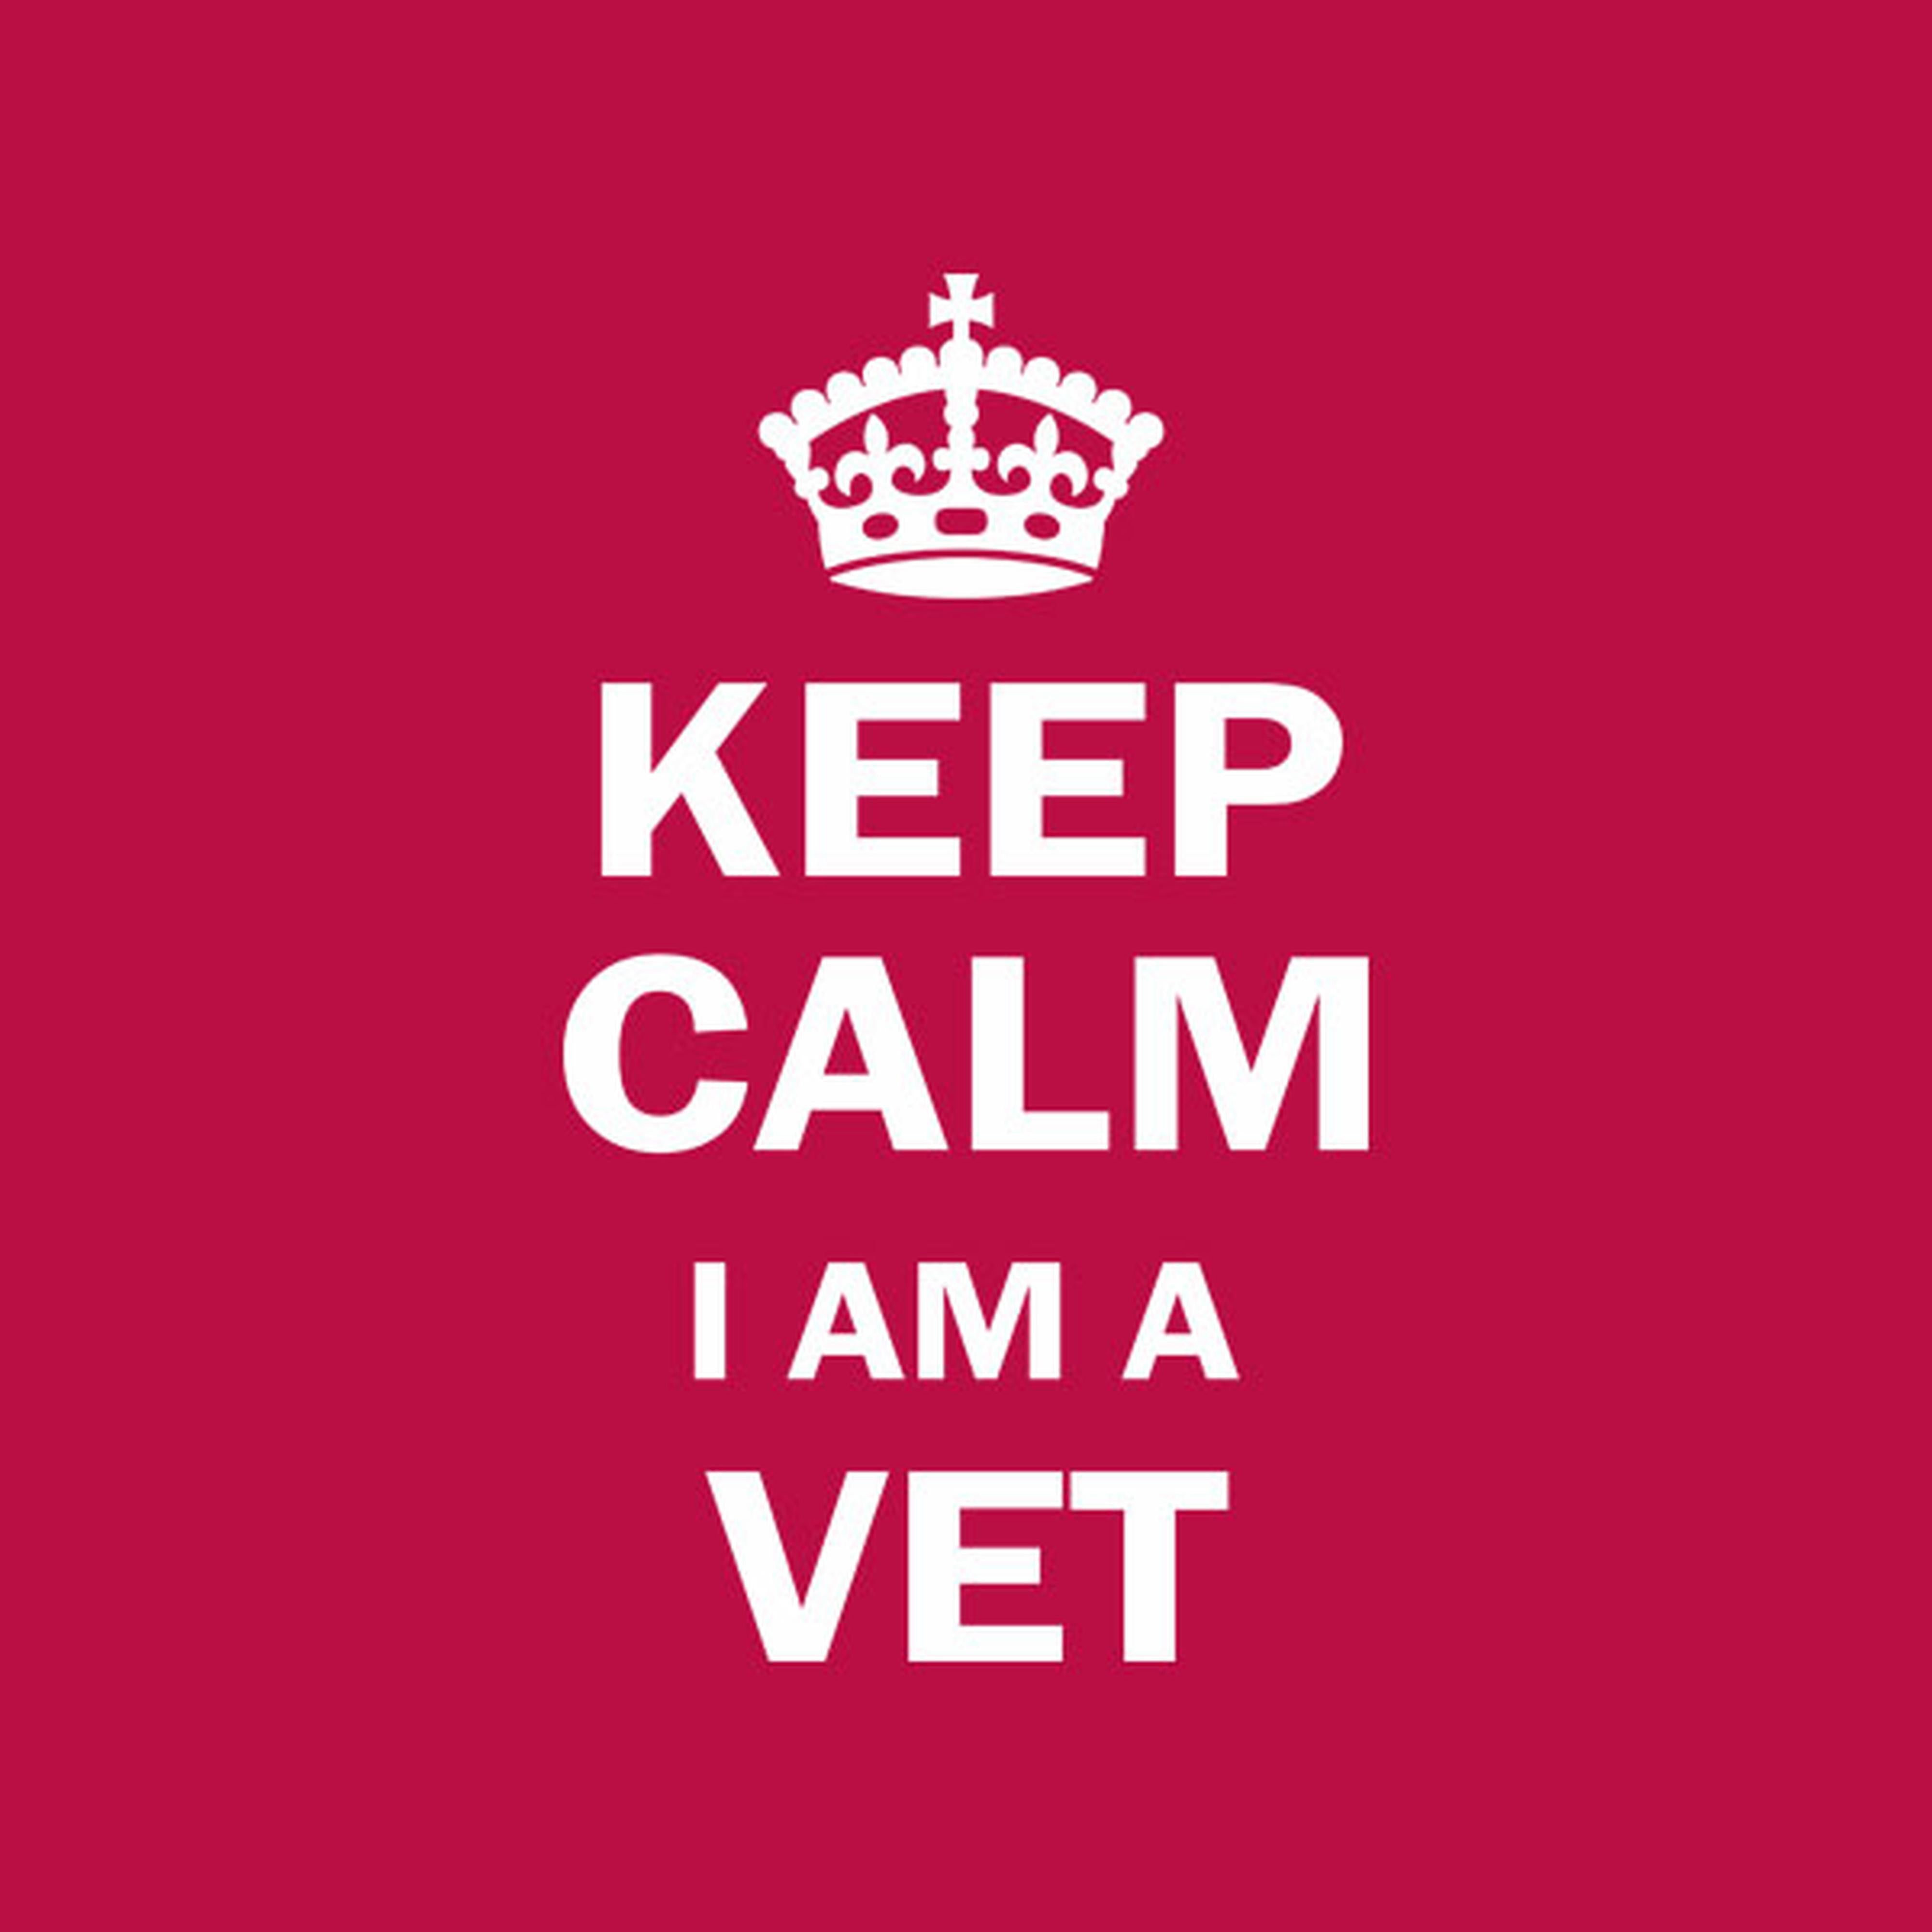 Keep calm I am a Vet - T-shirt